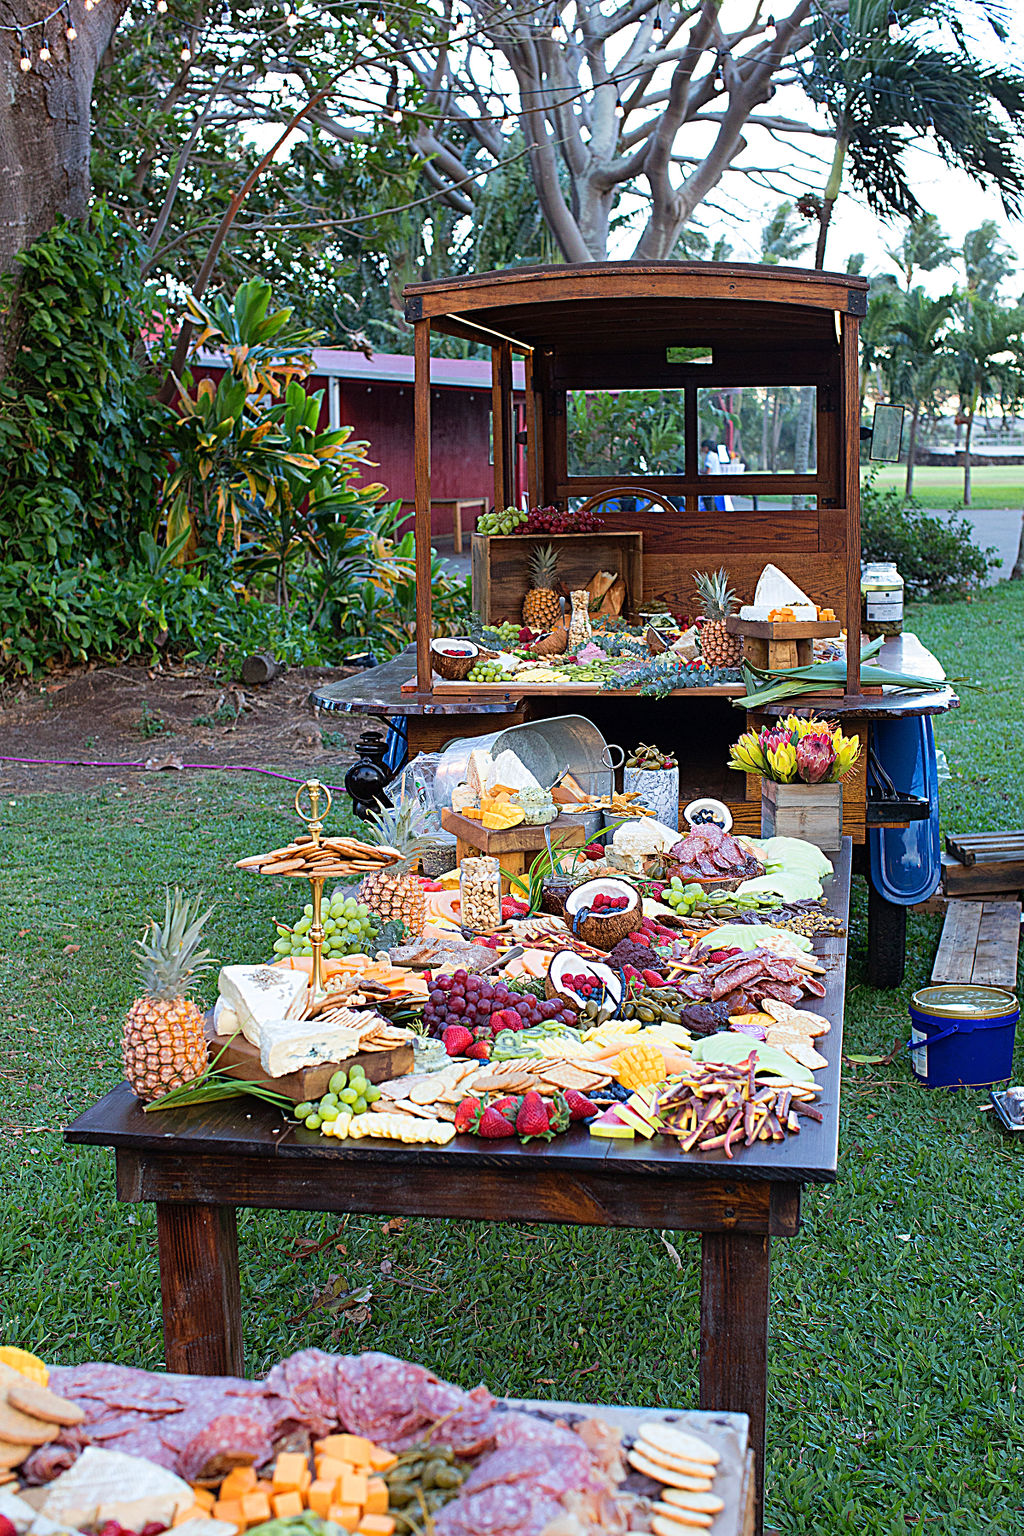 Maui Tropical Plantation  Tour, shop, explore and dine!